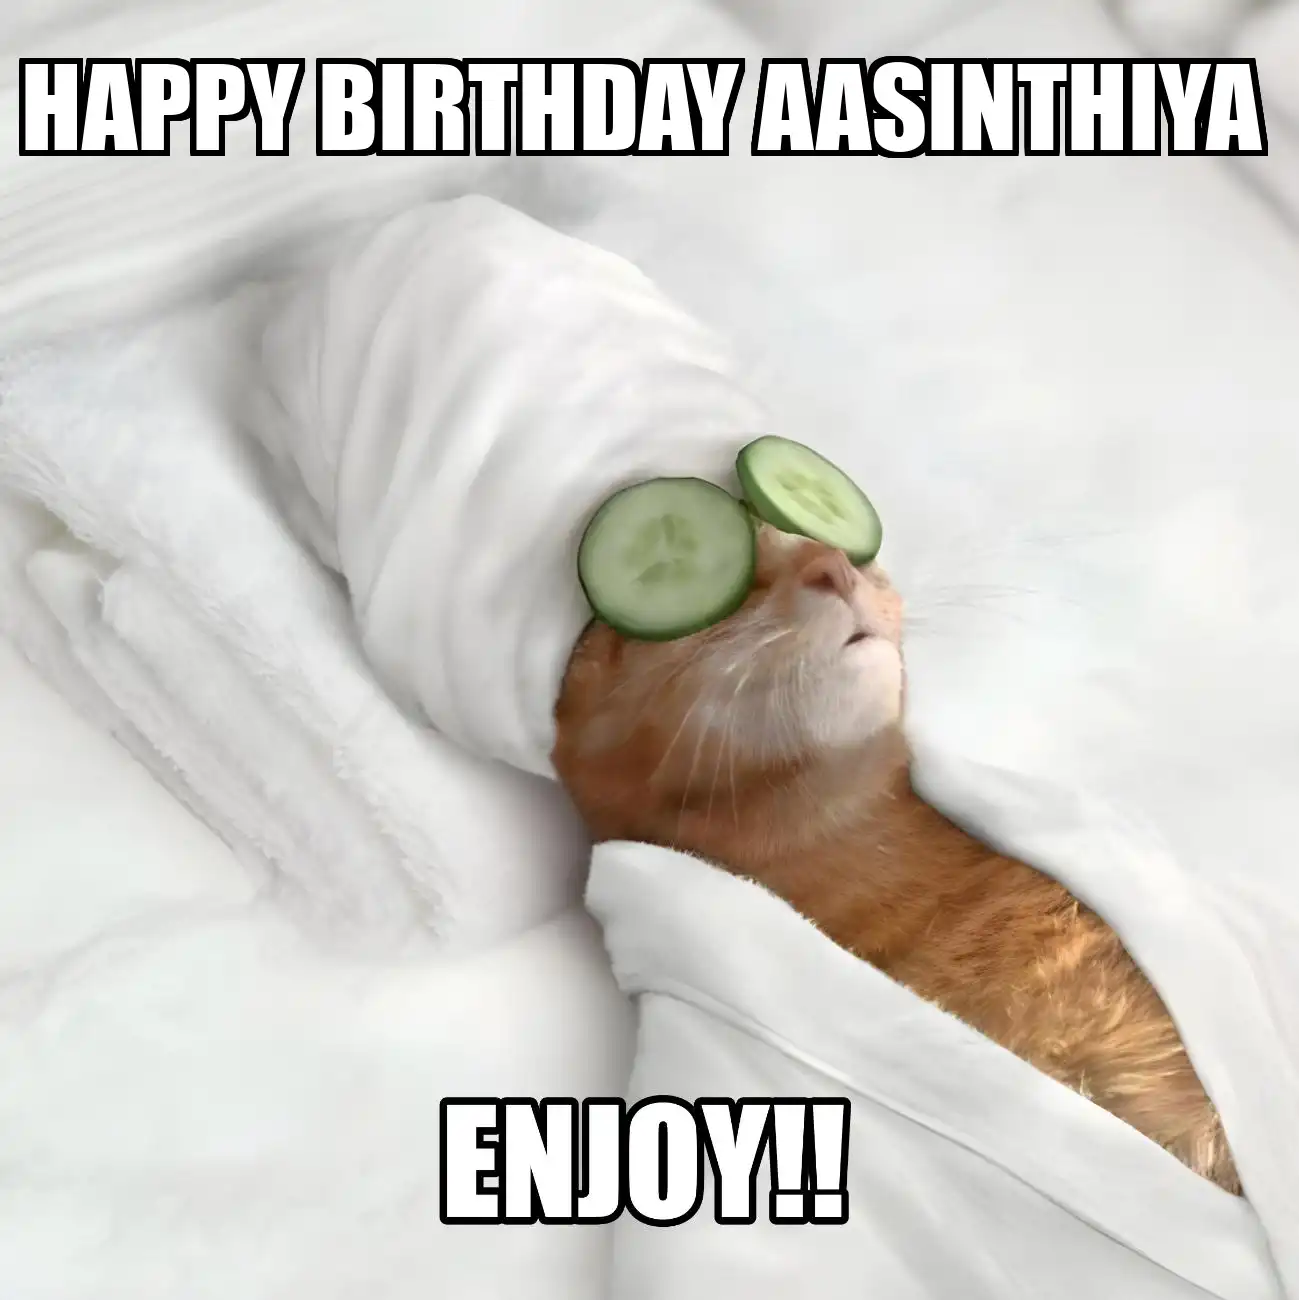 Happy Birthday Aasinthiya Enjoy Cat Meme